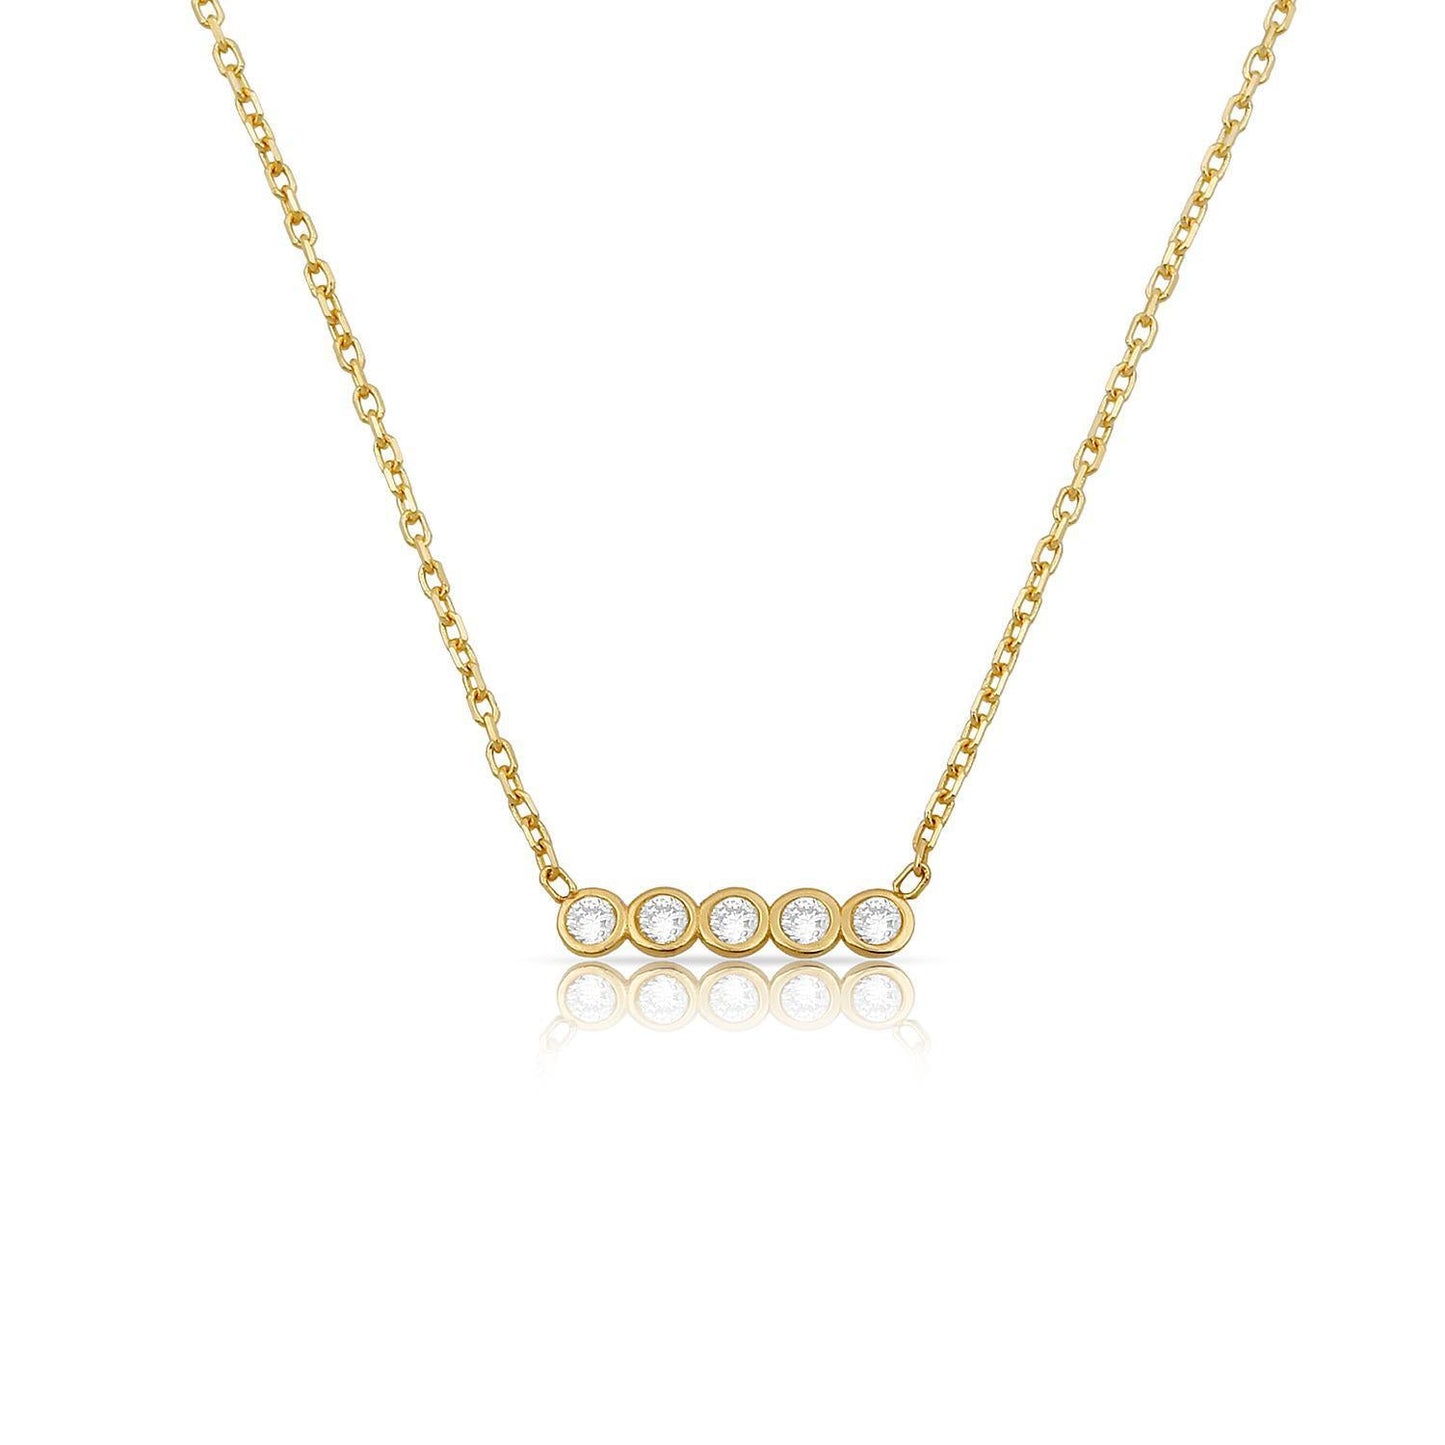 TSK Diamond Necklace Stock Sale JEWELRY The Sis Kiss TSK Loverly Diamond Bar Necklace 14k gold 0.13ct